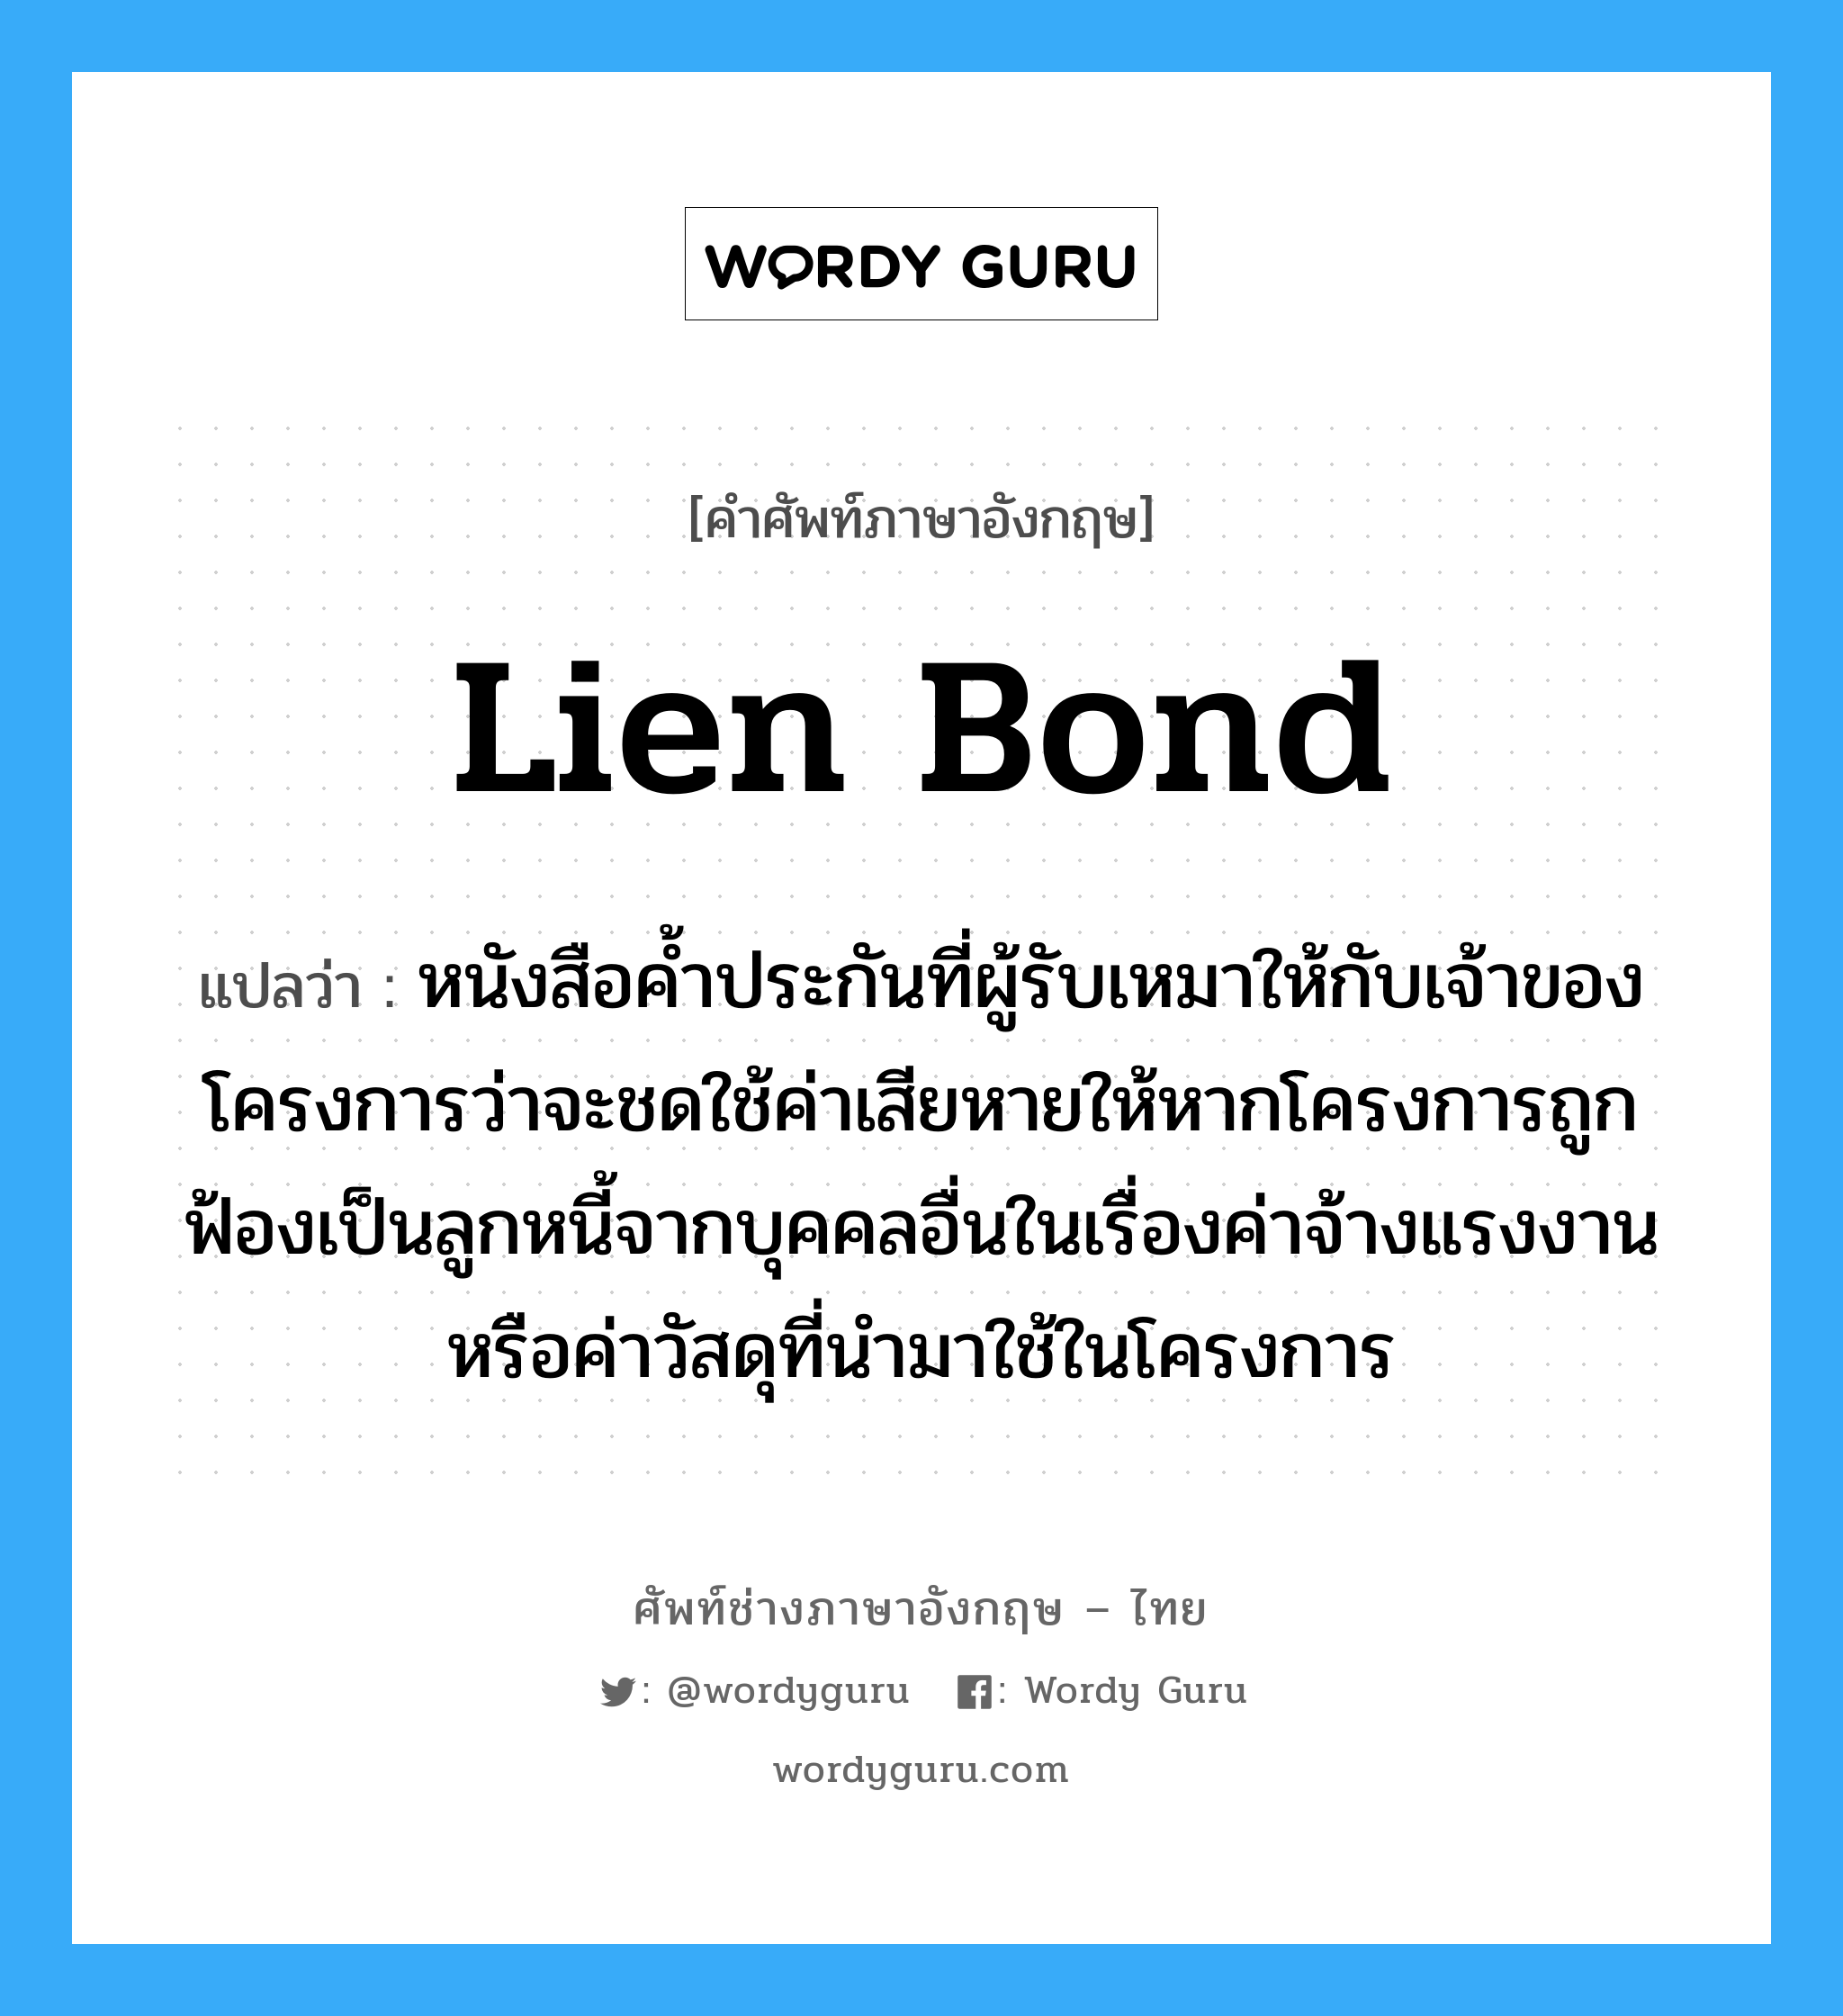 หนังสือค้ำประกันที่ผู้รับเหมาให้กับเจ้าของโครงการว่าจะเข้ามาทำการแก้ไข หรือทำใหม่ หรือเปลี่ยนสิ่งบกพร่อง, ชำรุด, เสื่อมคุณภาพของงานภายในระยะเวลาที่กำหนดอันเกิดจากฝีมือการทำงานหรือการใช้วัสดุที่ไม่ได้คุณภาพของผู้รับเหมา ภาษาอังกฤษ?, คำศัพท์ช่างภาษาอังกฤษ - ไทย หนังสือค้ำประกันที่ผู้รับเหมาให้กับเจ้าของโครงการว่าจะชดใช้ค่าเสียหายให้หากโครงการถูกฟ้องเป็นลูกหนี้จากบุคคลอื่นในเรื่องค่าจ้างแรงงานหรือค่าวัสดุที่นำมาใช้ในโครงการ คำศัพท์ภาษาอังกฤษ หนังสือค้ำประกันที่ผู้รับเหมาให้กับเจ้าของโครงการว่าจะชดใช้ค่าเสียหายให้หากโครงการถูกฟ้องเป็นลูกหนี้จากบุคคลอื่นในเรื่องค่าจ้างแรงงานหรือค่าวัสดุที่นำมาใช้ในโครงการ แปลว่า Lien Bond